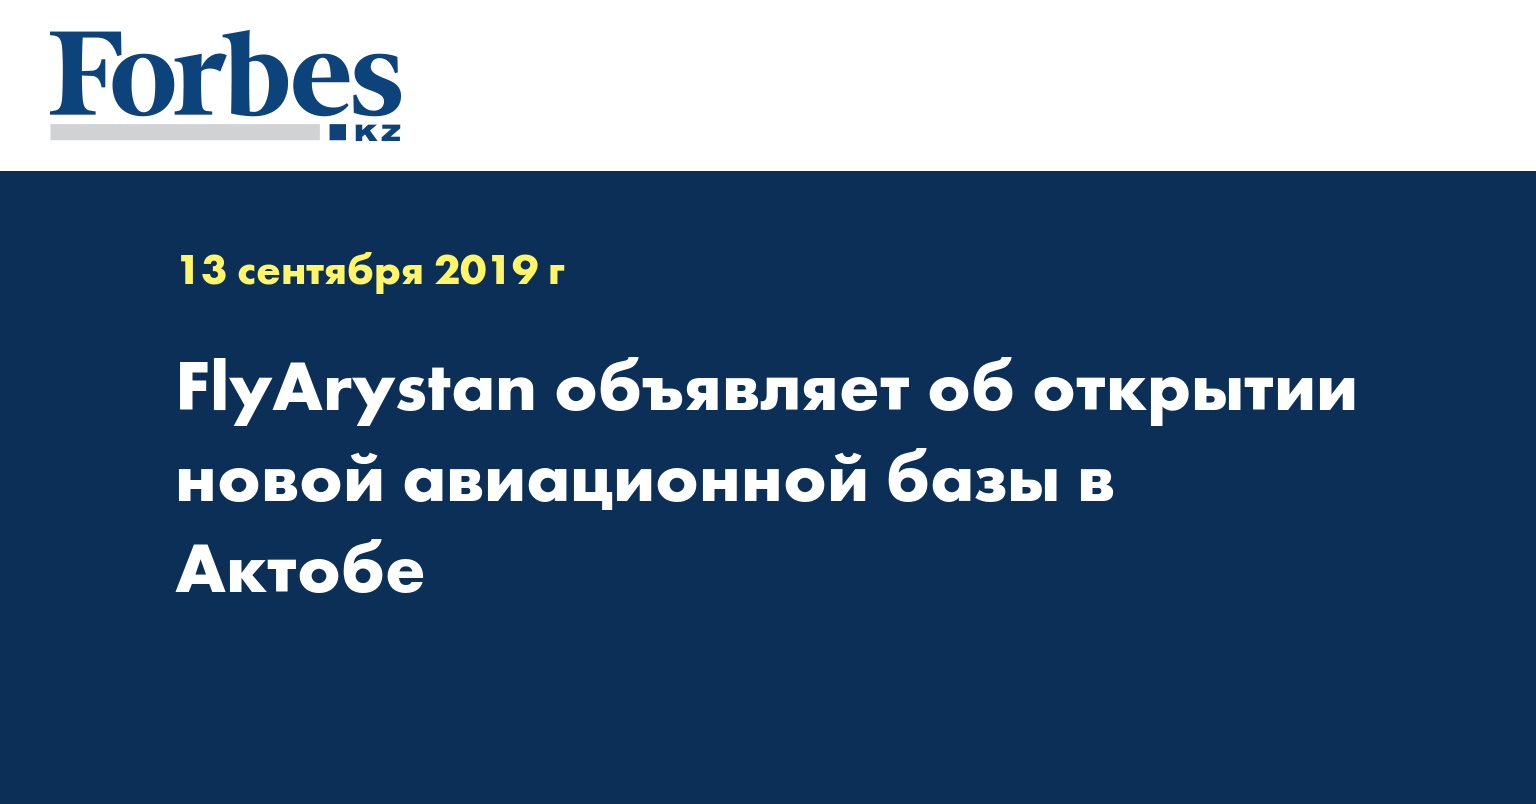 FlyArystan объявляет об открытии новой авиационной базы в Актобе